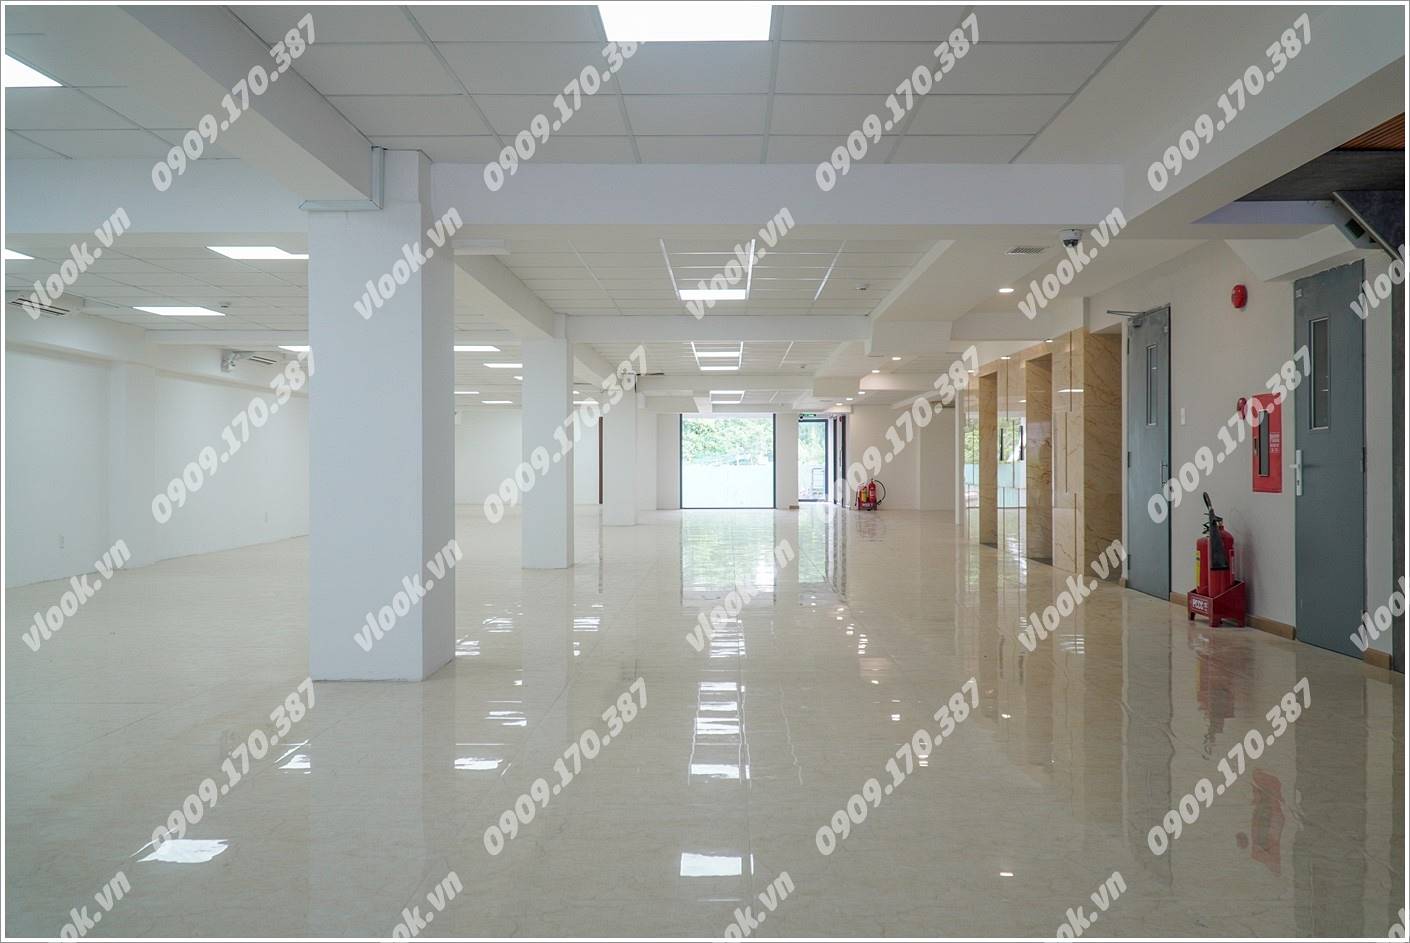 Cao ốc văn phòng cho thuê toà nhà Mach Office, Ung Văn Khiêm, Quận Bình Thạnh - vlook.vn